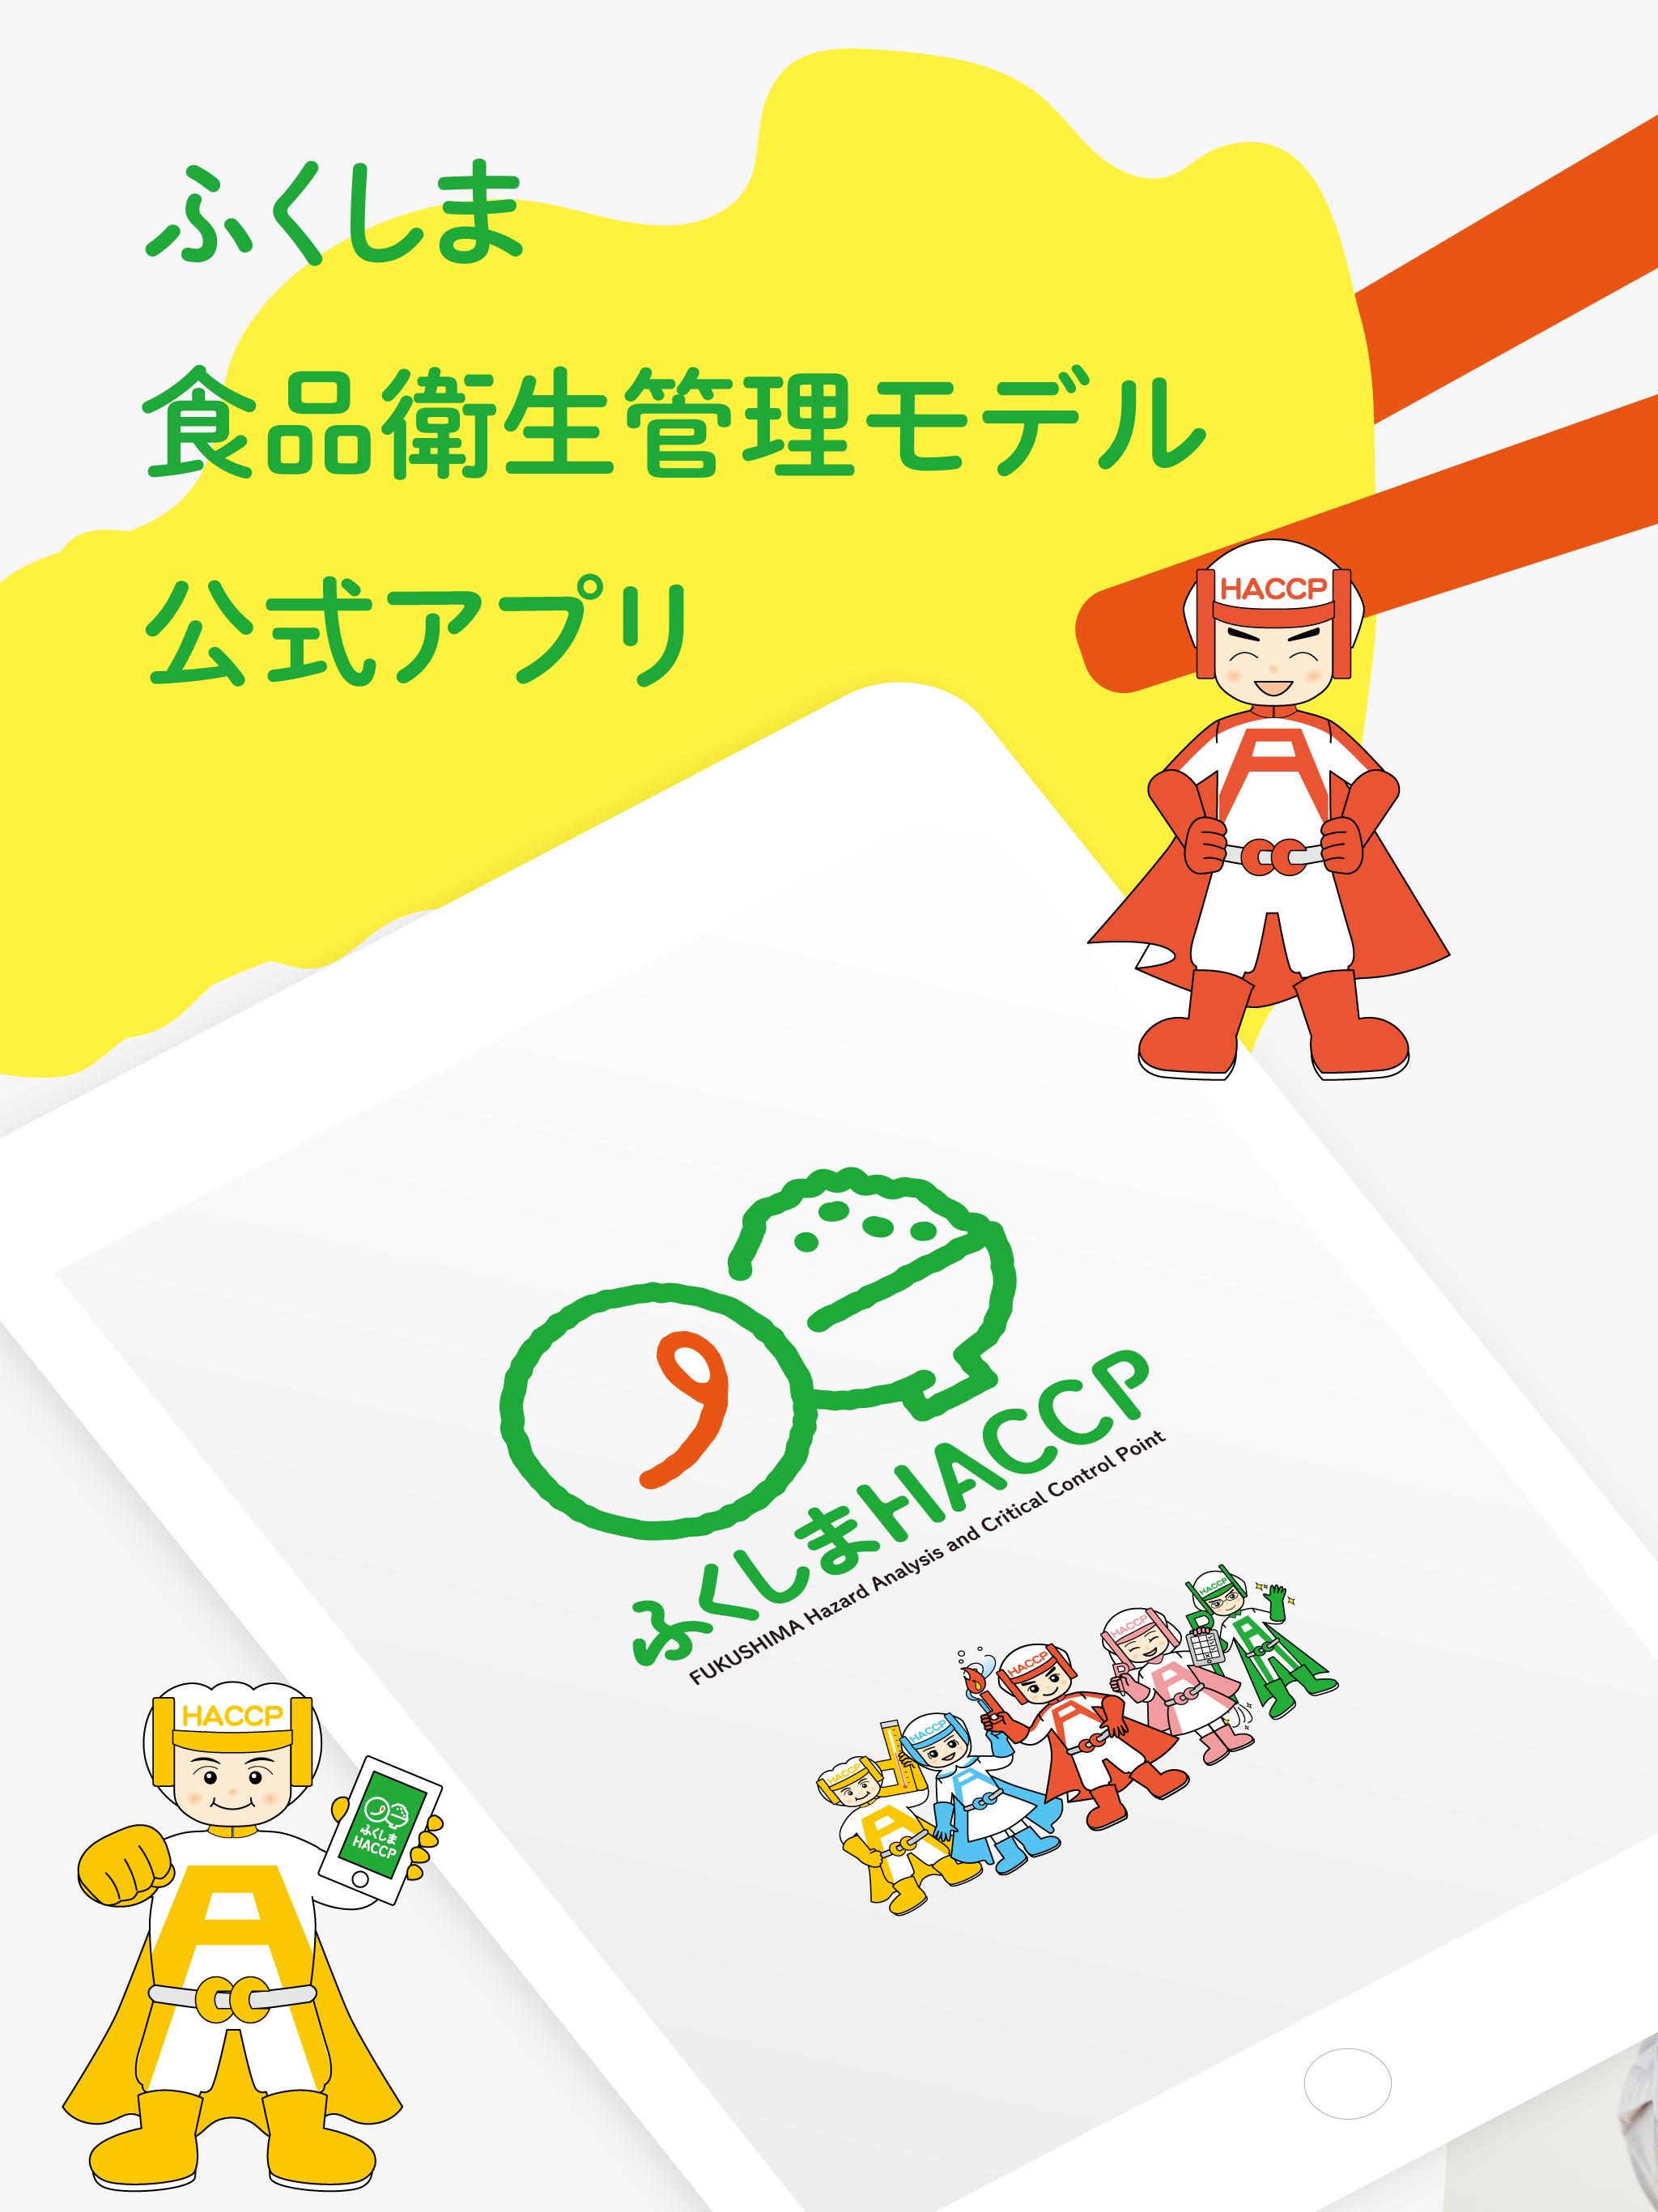 ふくしまHACCPアプリ 1.0.10 Screenshot 4